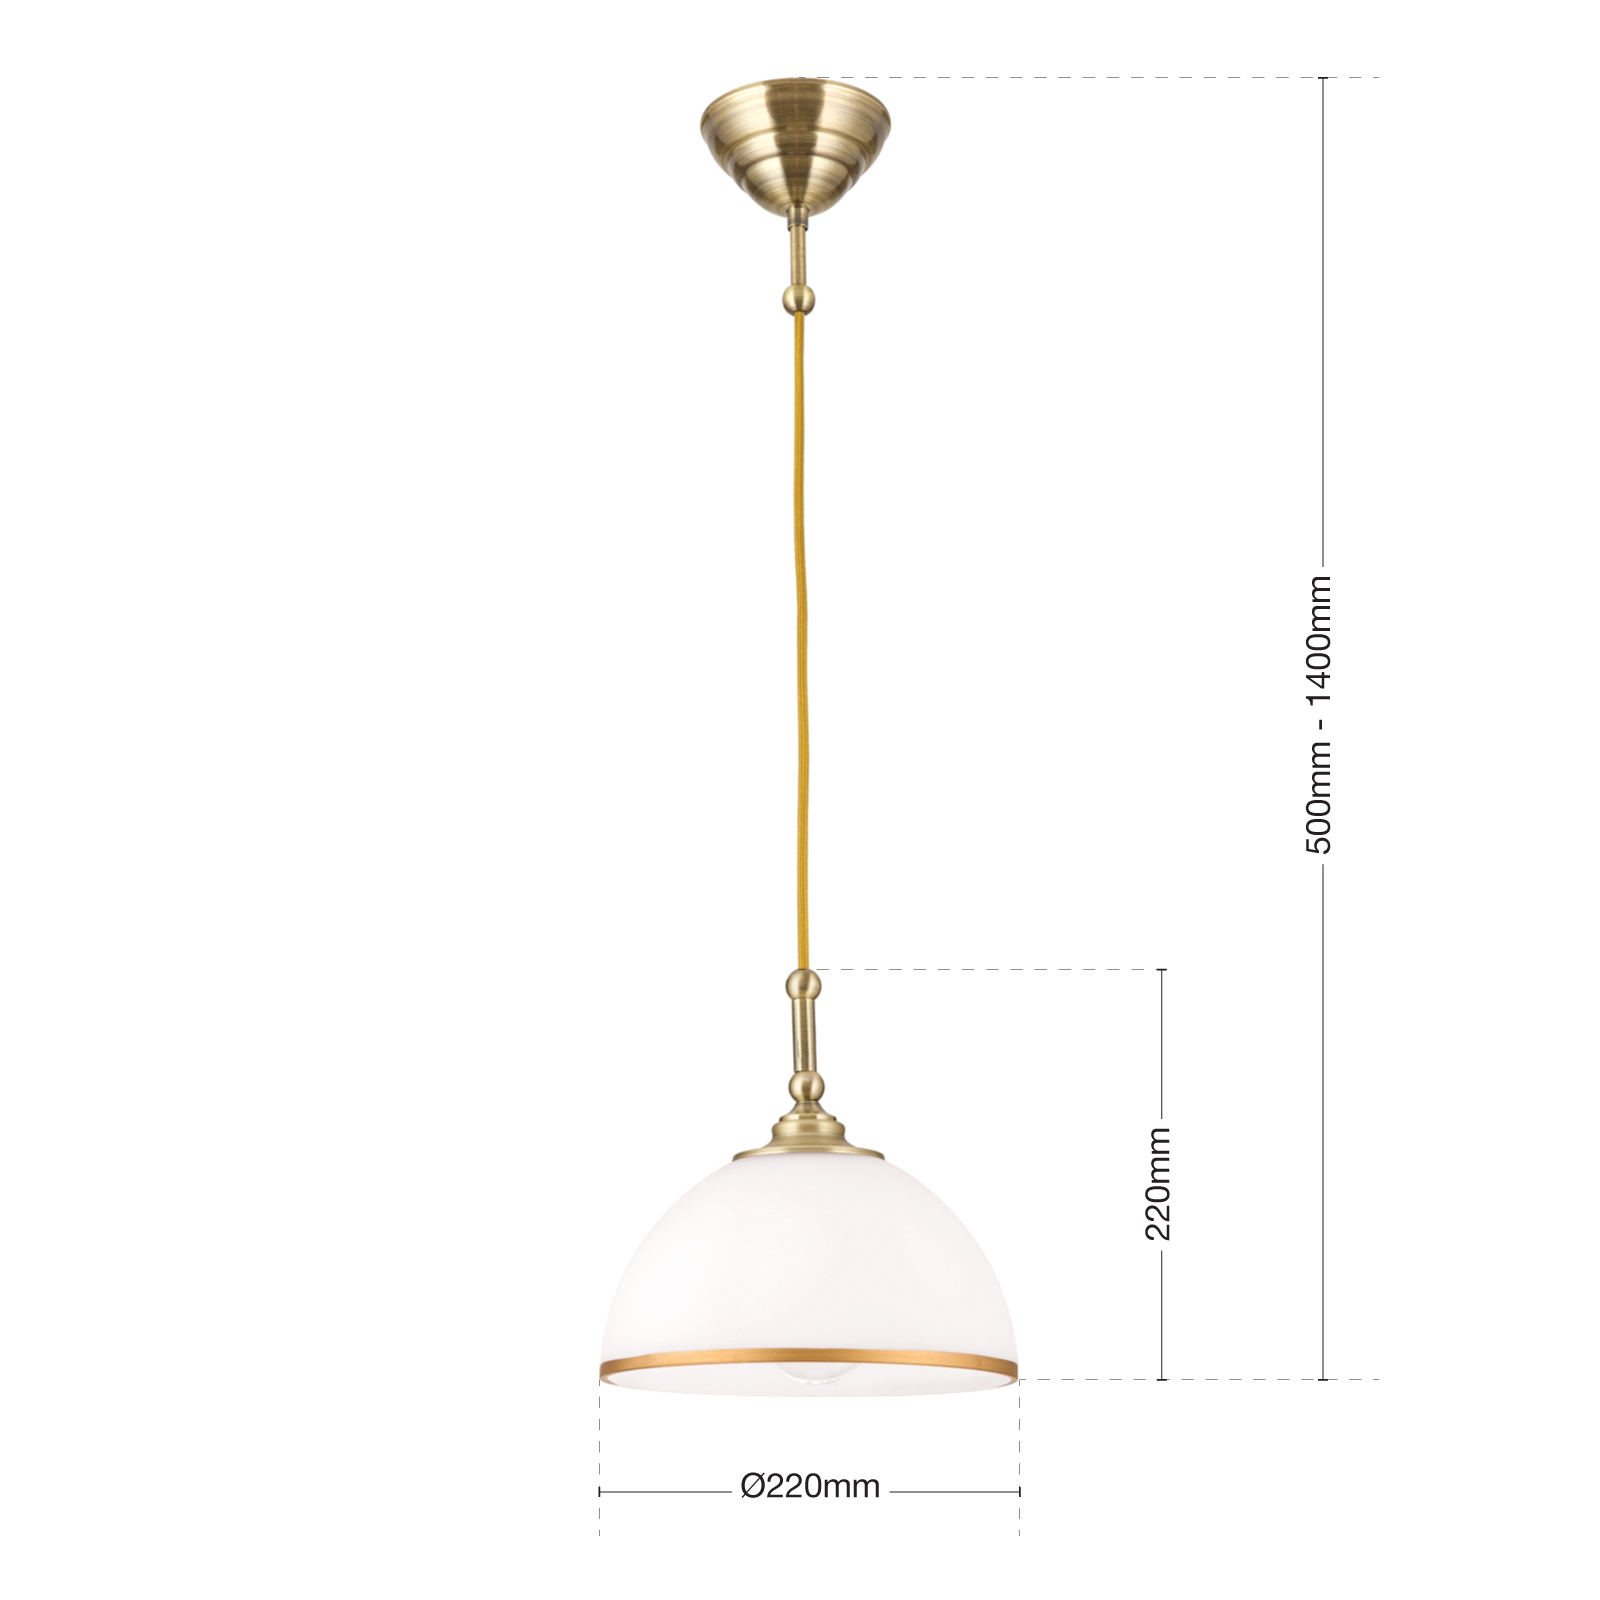 Old Lamp függő lámpa textil kábellel, egy izzós